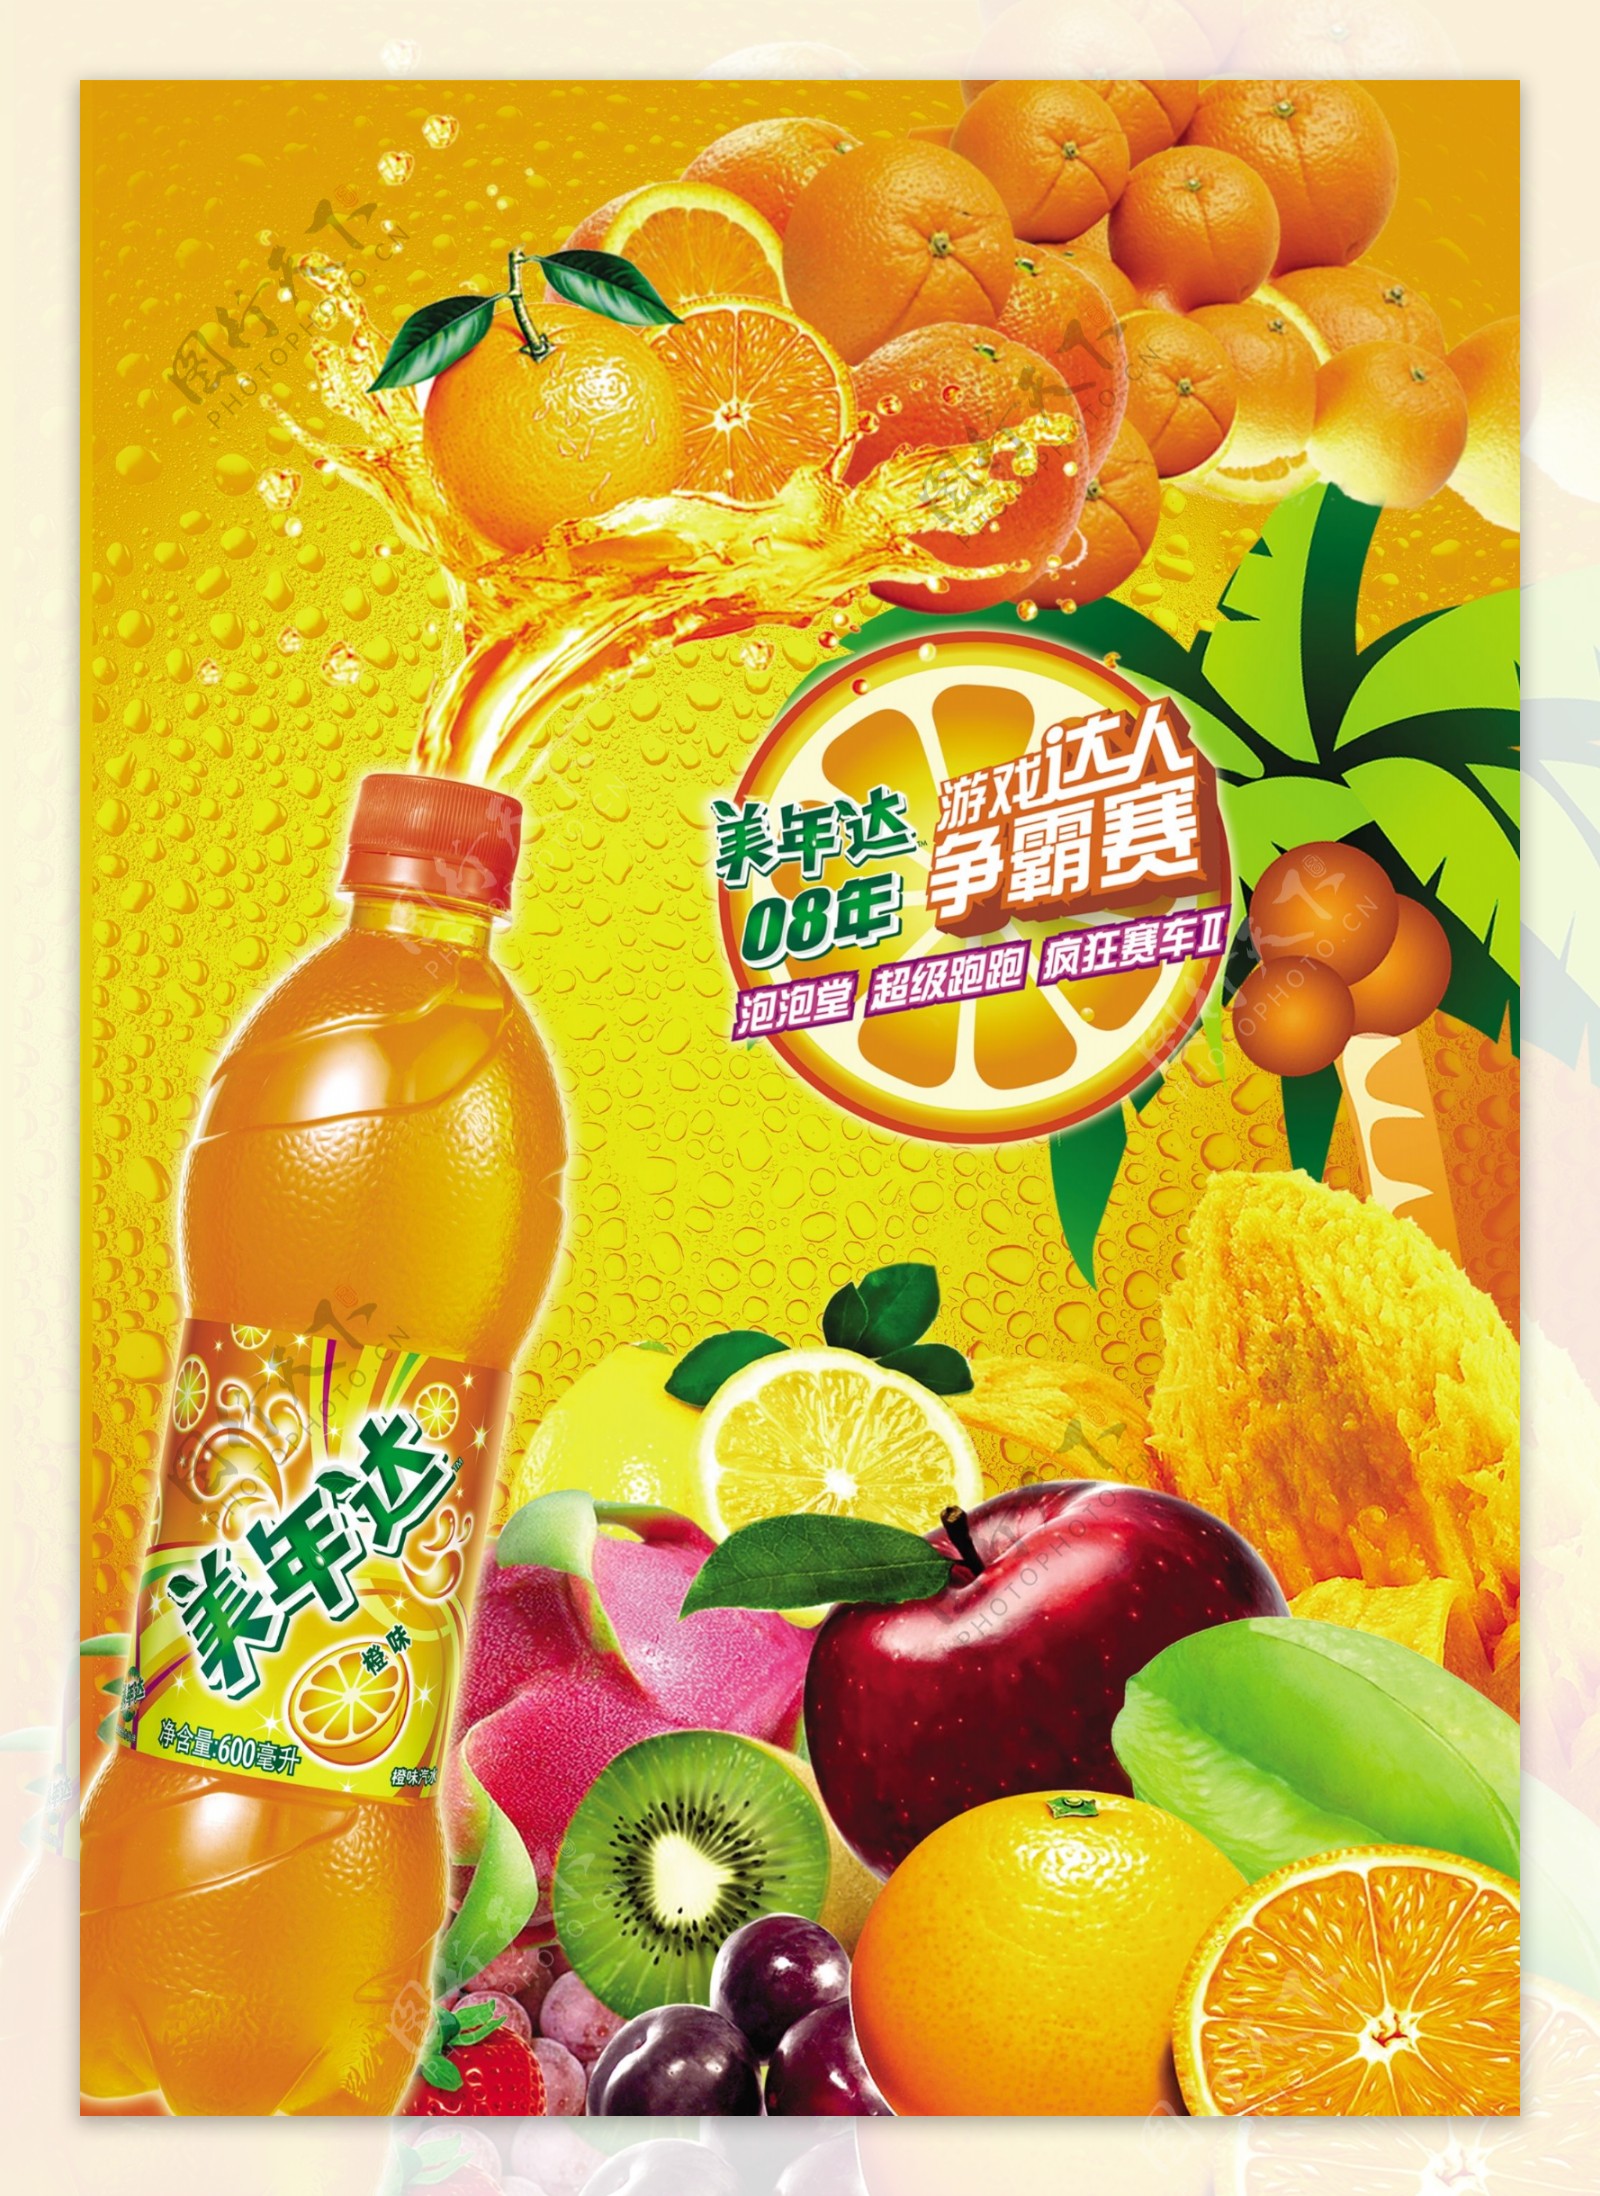 美年达橙汁饮料广告